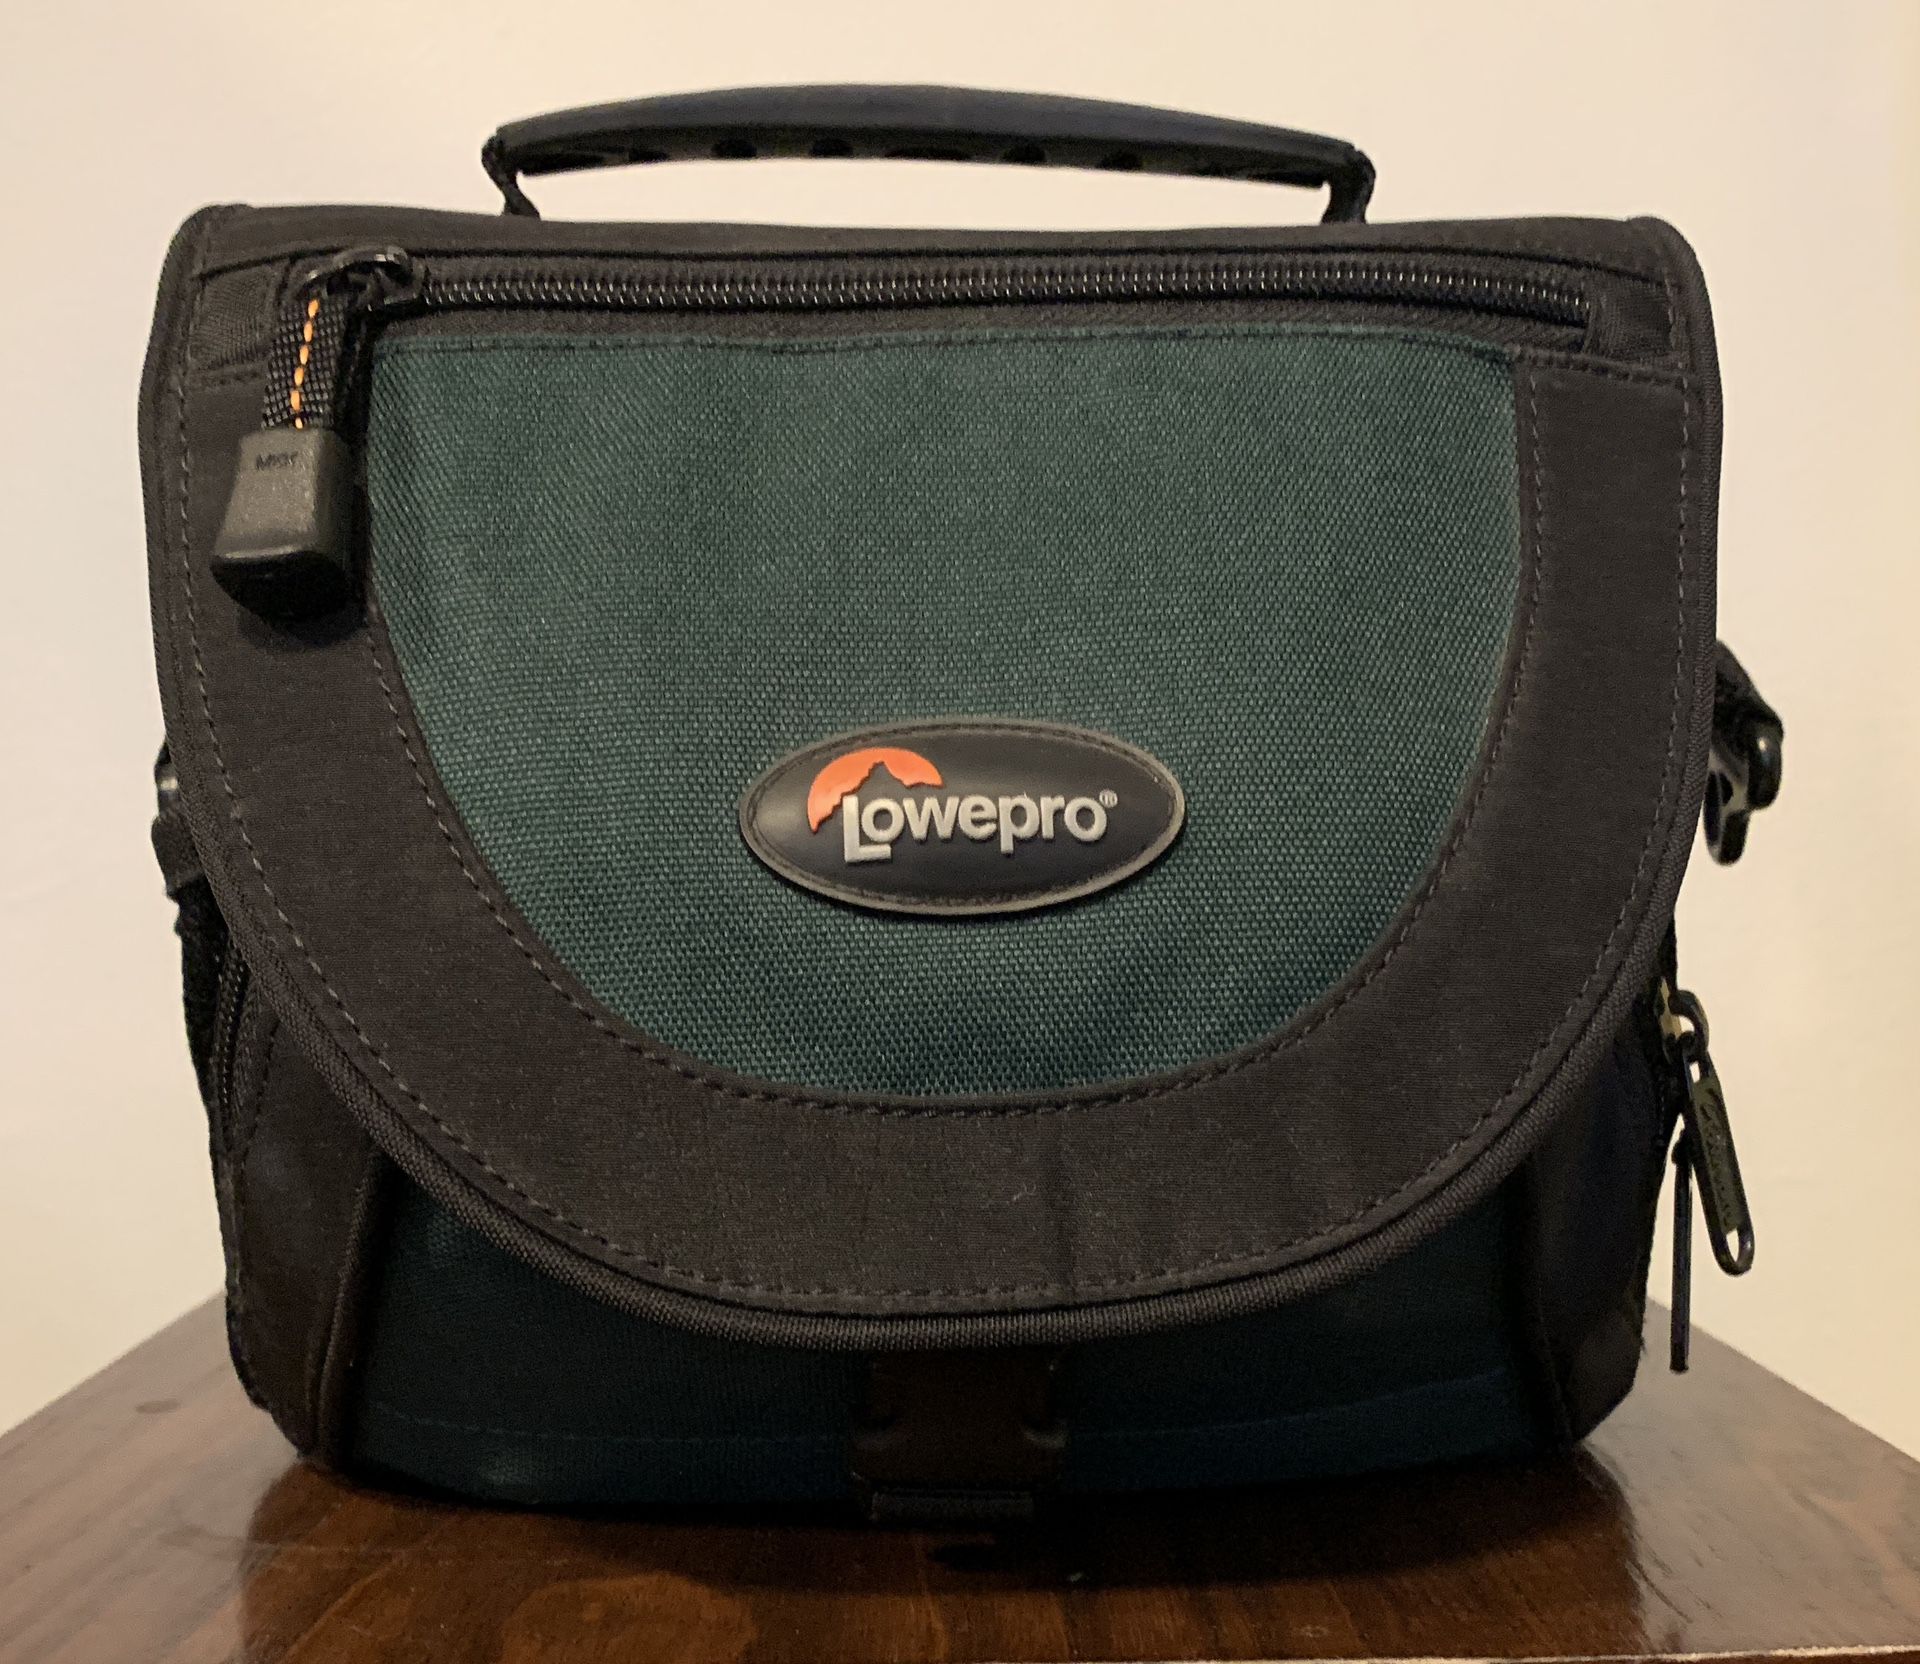 Lowepro Nova 1 AW Camera Bag